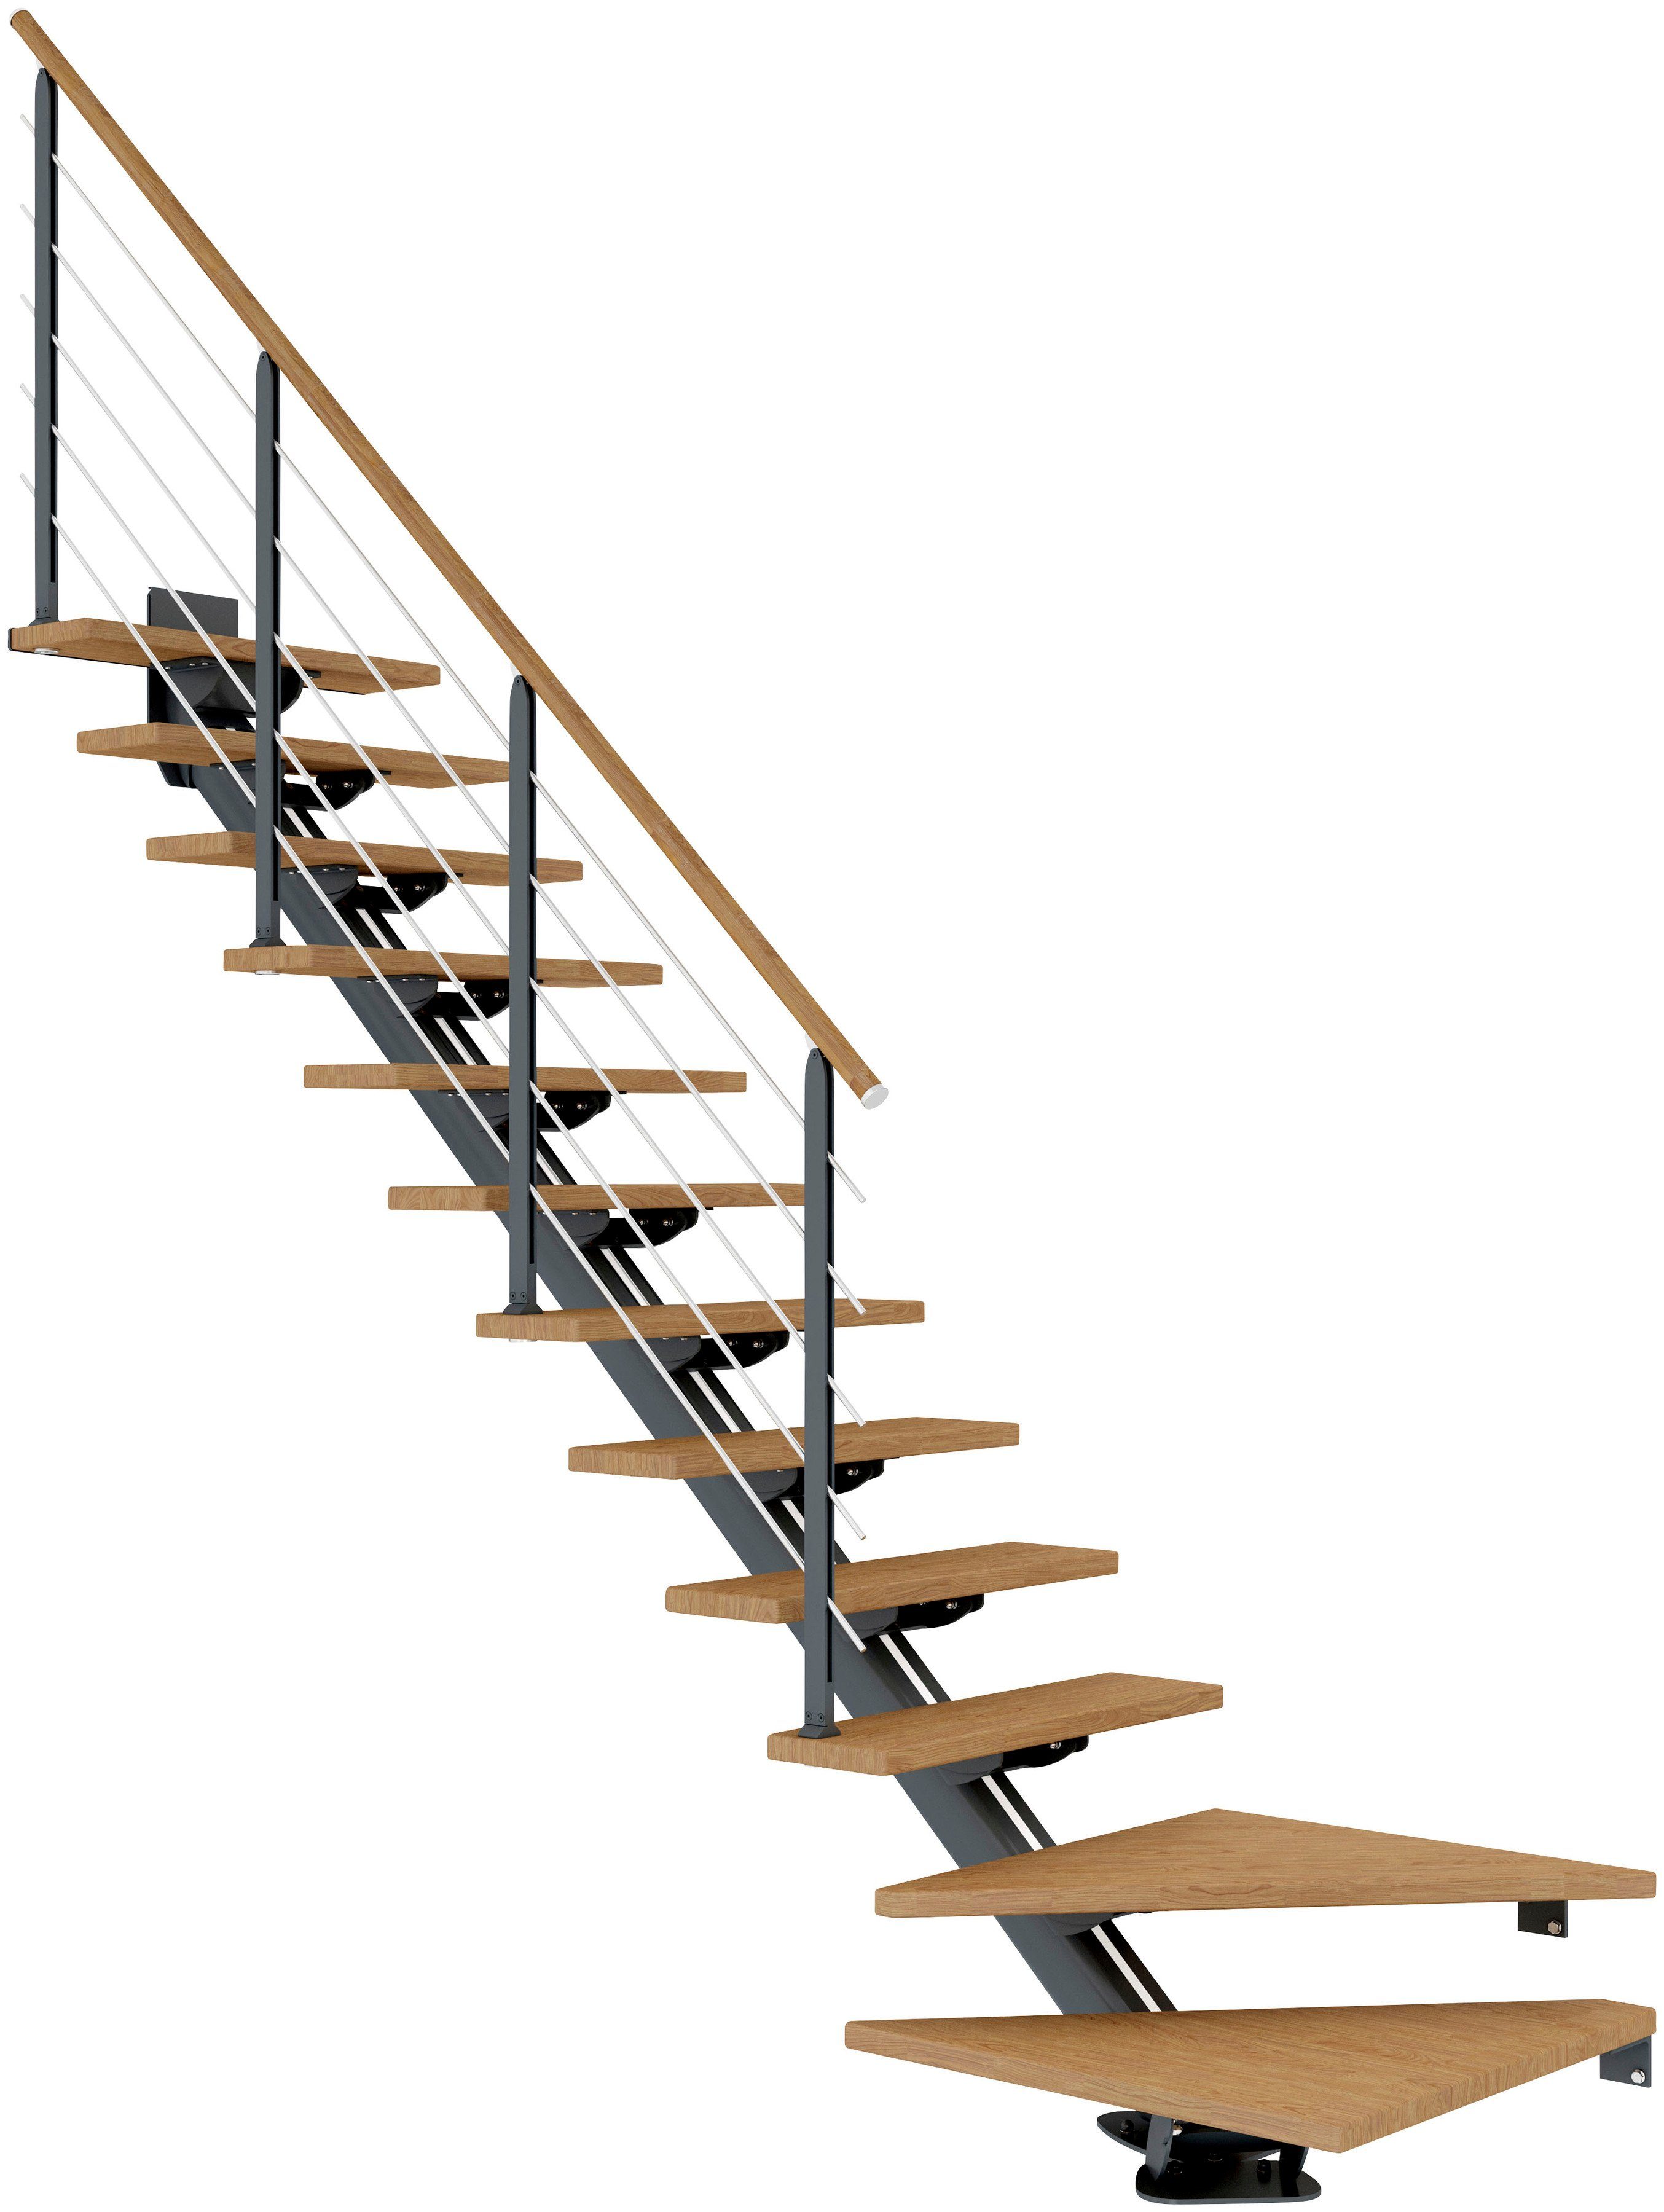 pulverbeschichtet cm, und Holzkomponenten bis 270 Unterkonstruktion Geschosshöhen Stufen offen, Mittelholmtreppe für geölt, Dolle Pfosten Sydney,